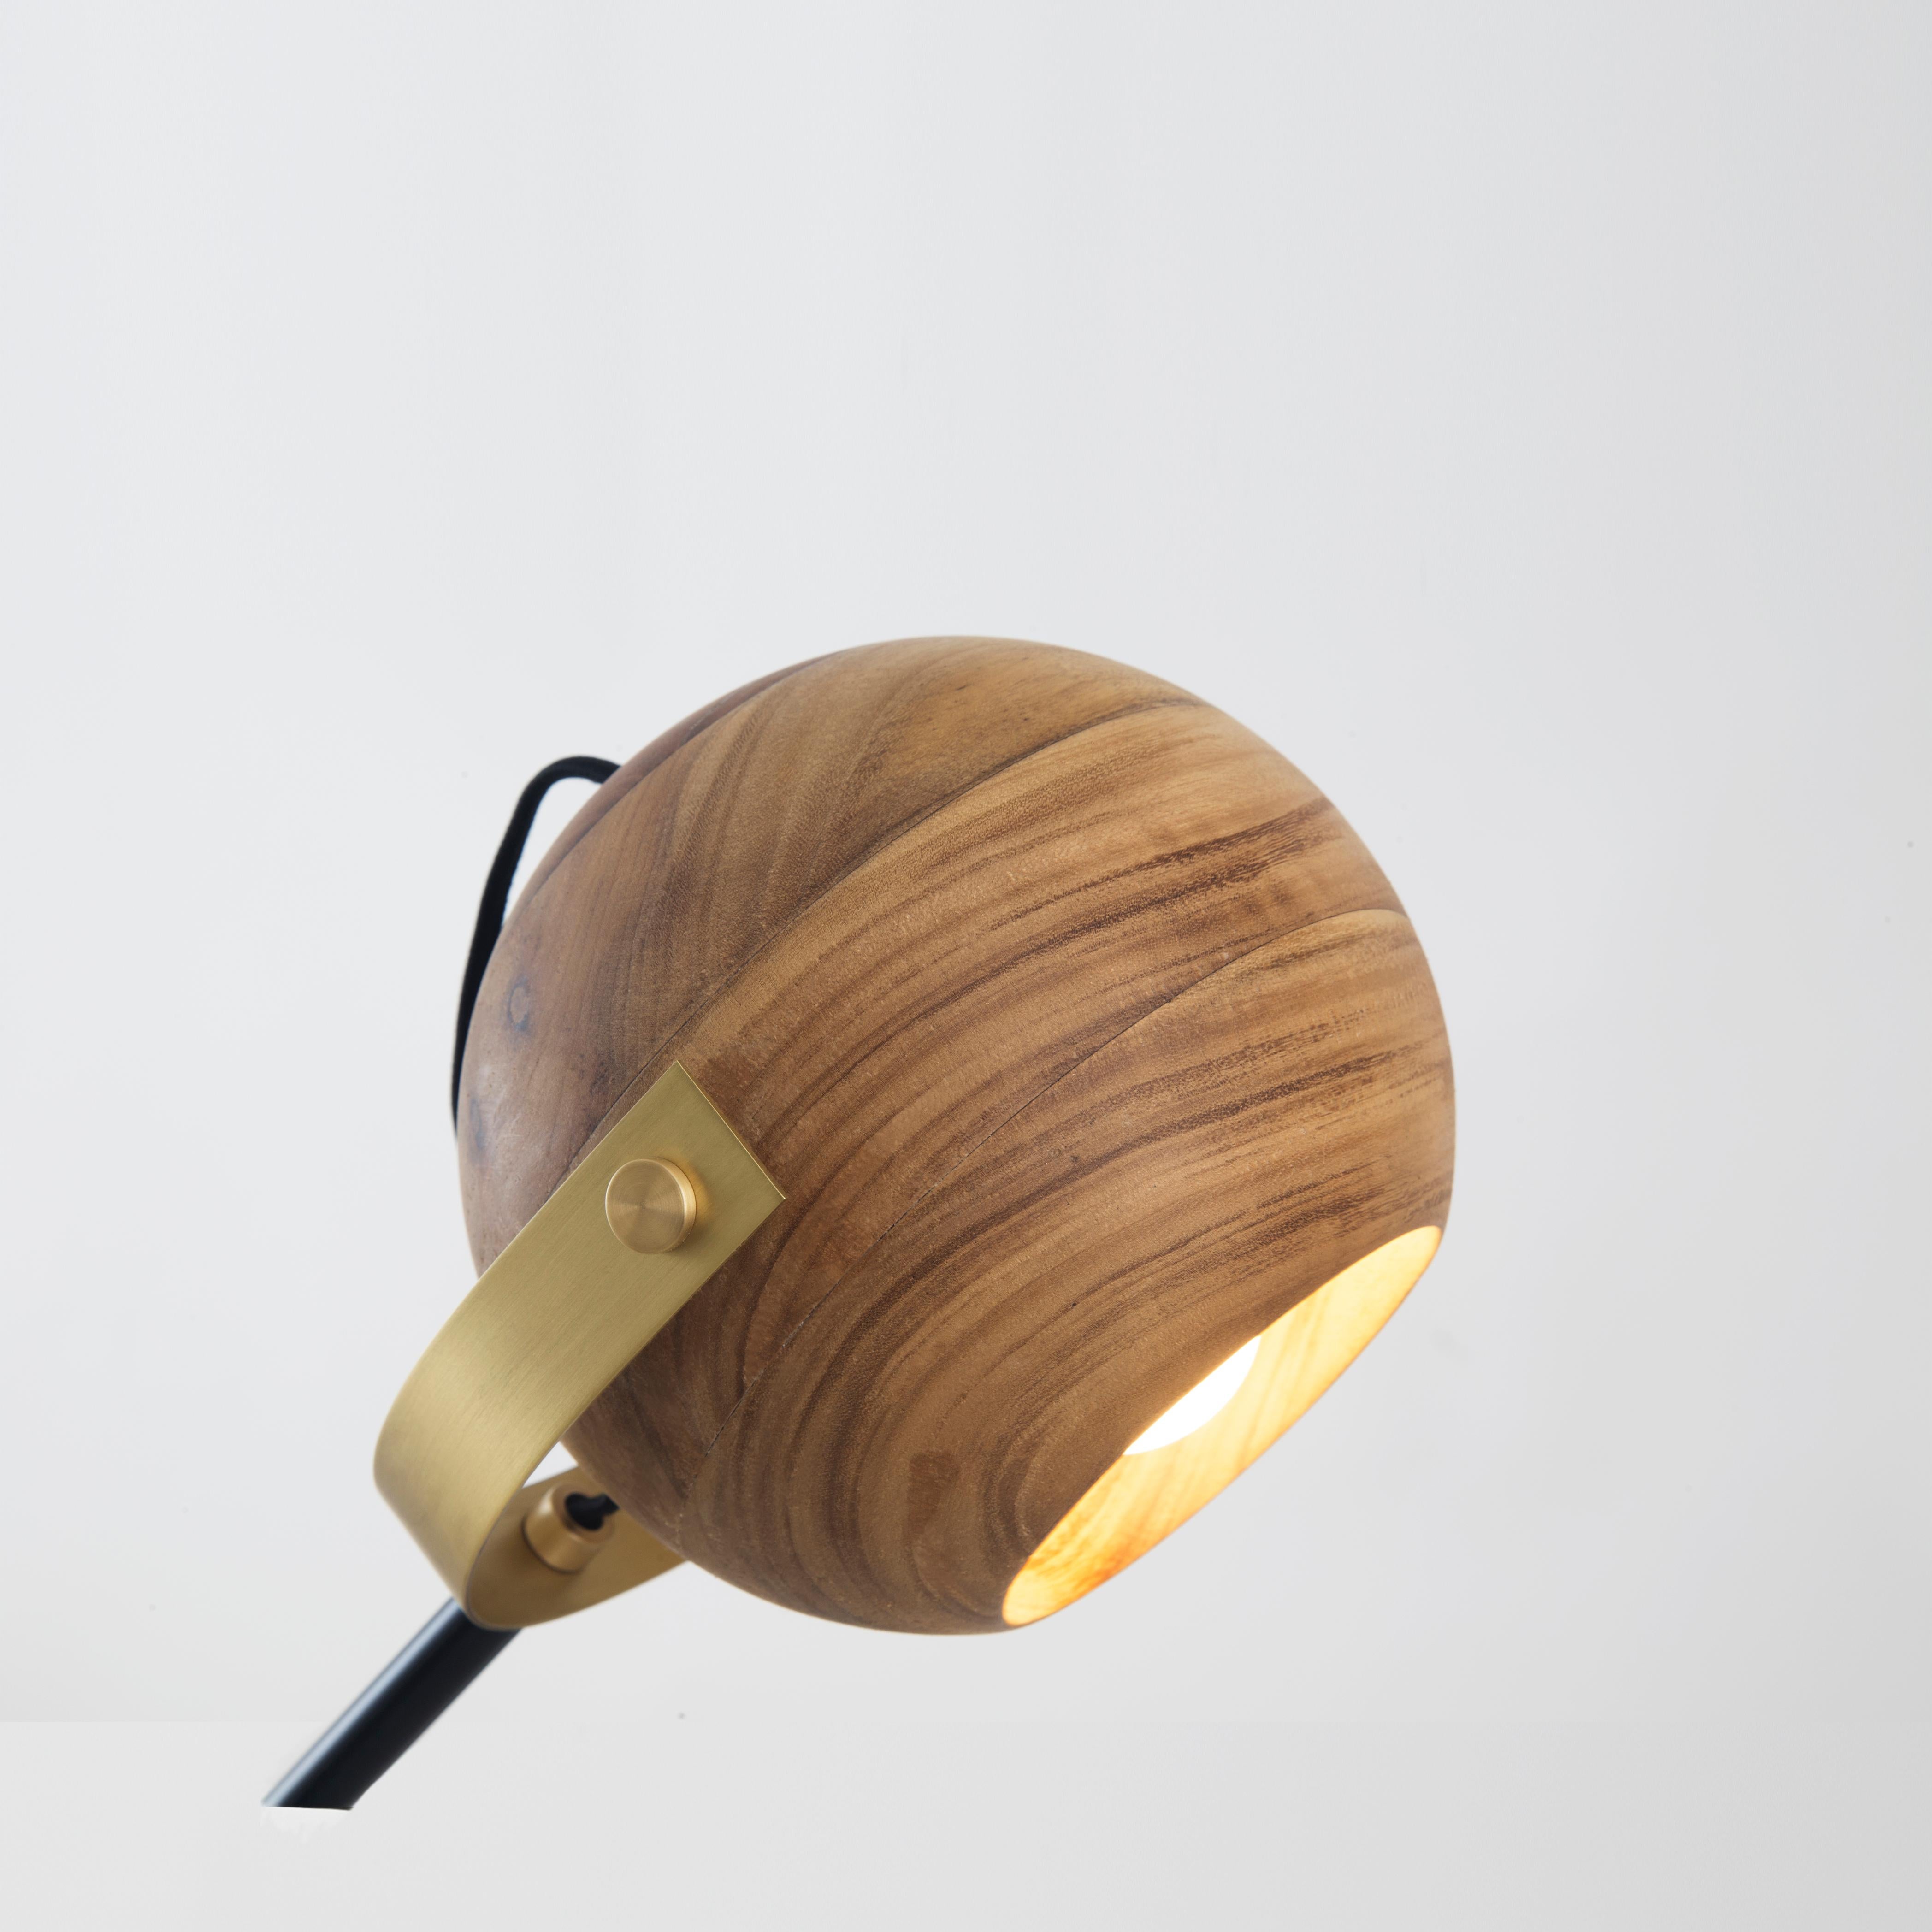 Inspiriert vom brasilianischen Mid-Century-Modern-Stil wurde diese Schreibtischlampe aus schwarzem Holz und Messing, die sich in drei Achsen sanft bewegt, bei den A'Design Awards 2019 ausgezeichnet.
Mit ihrer geometrisch-rationalen Form bringt diese